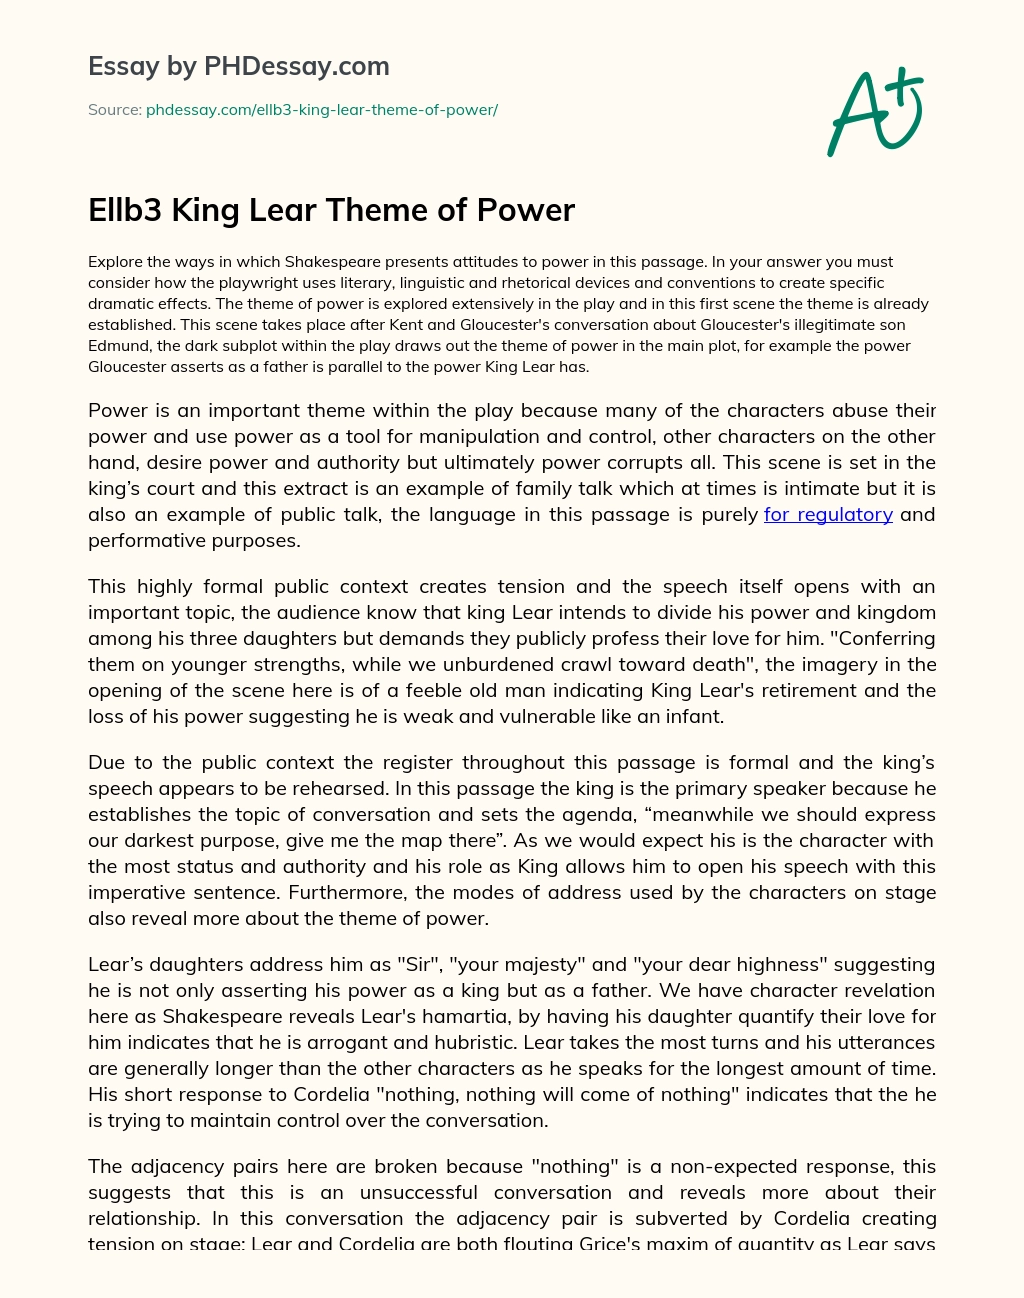 Ellb3 King Lear Theme of Power essay